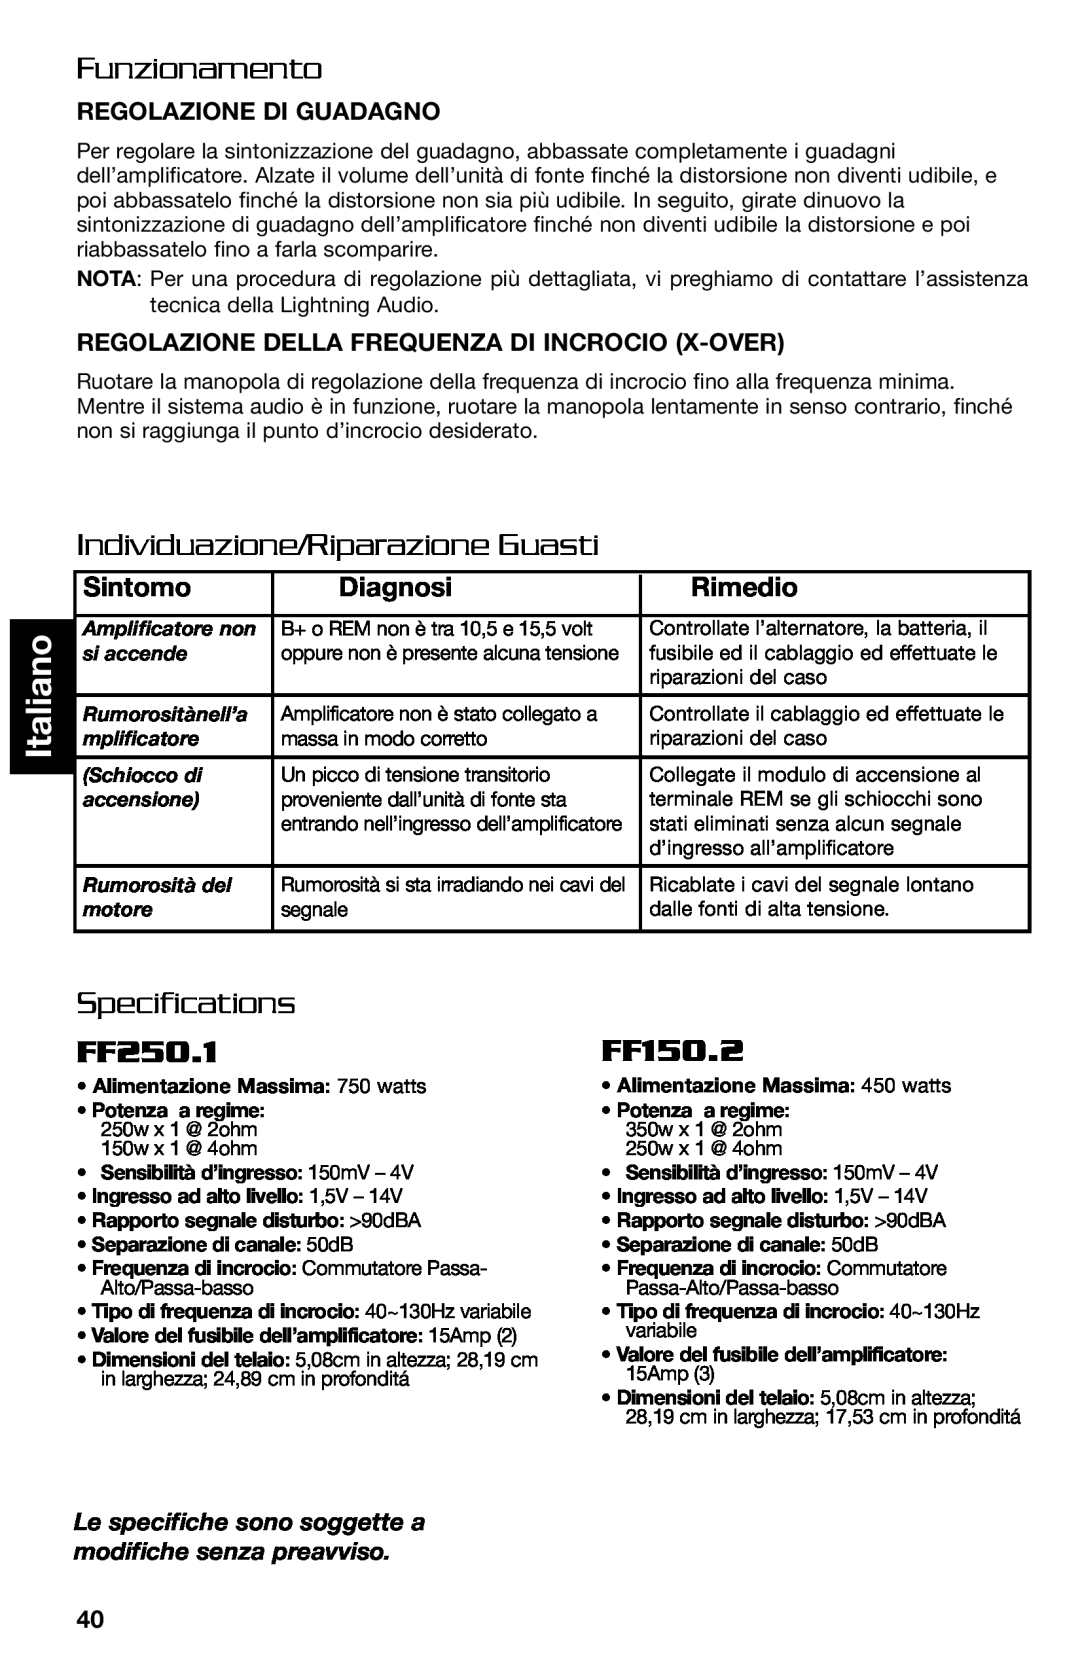 Lightning Audio FF250.1 manual Funzionamento, Individuazione/Riparazione Guasti, Sintomo, Diagnosi, Rimedio, Specifications 